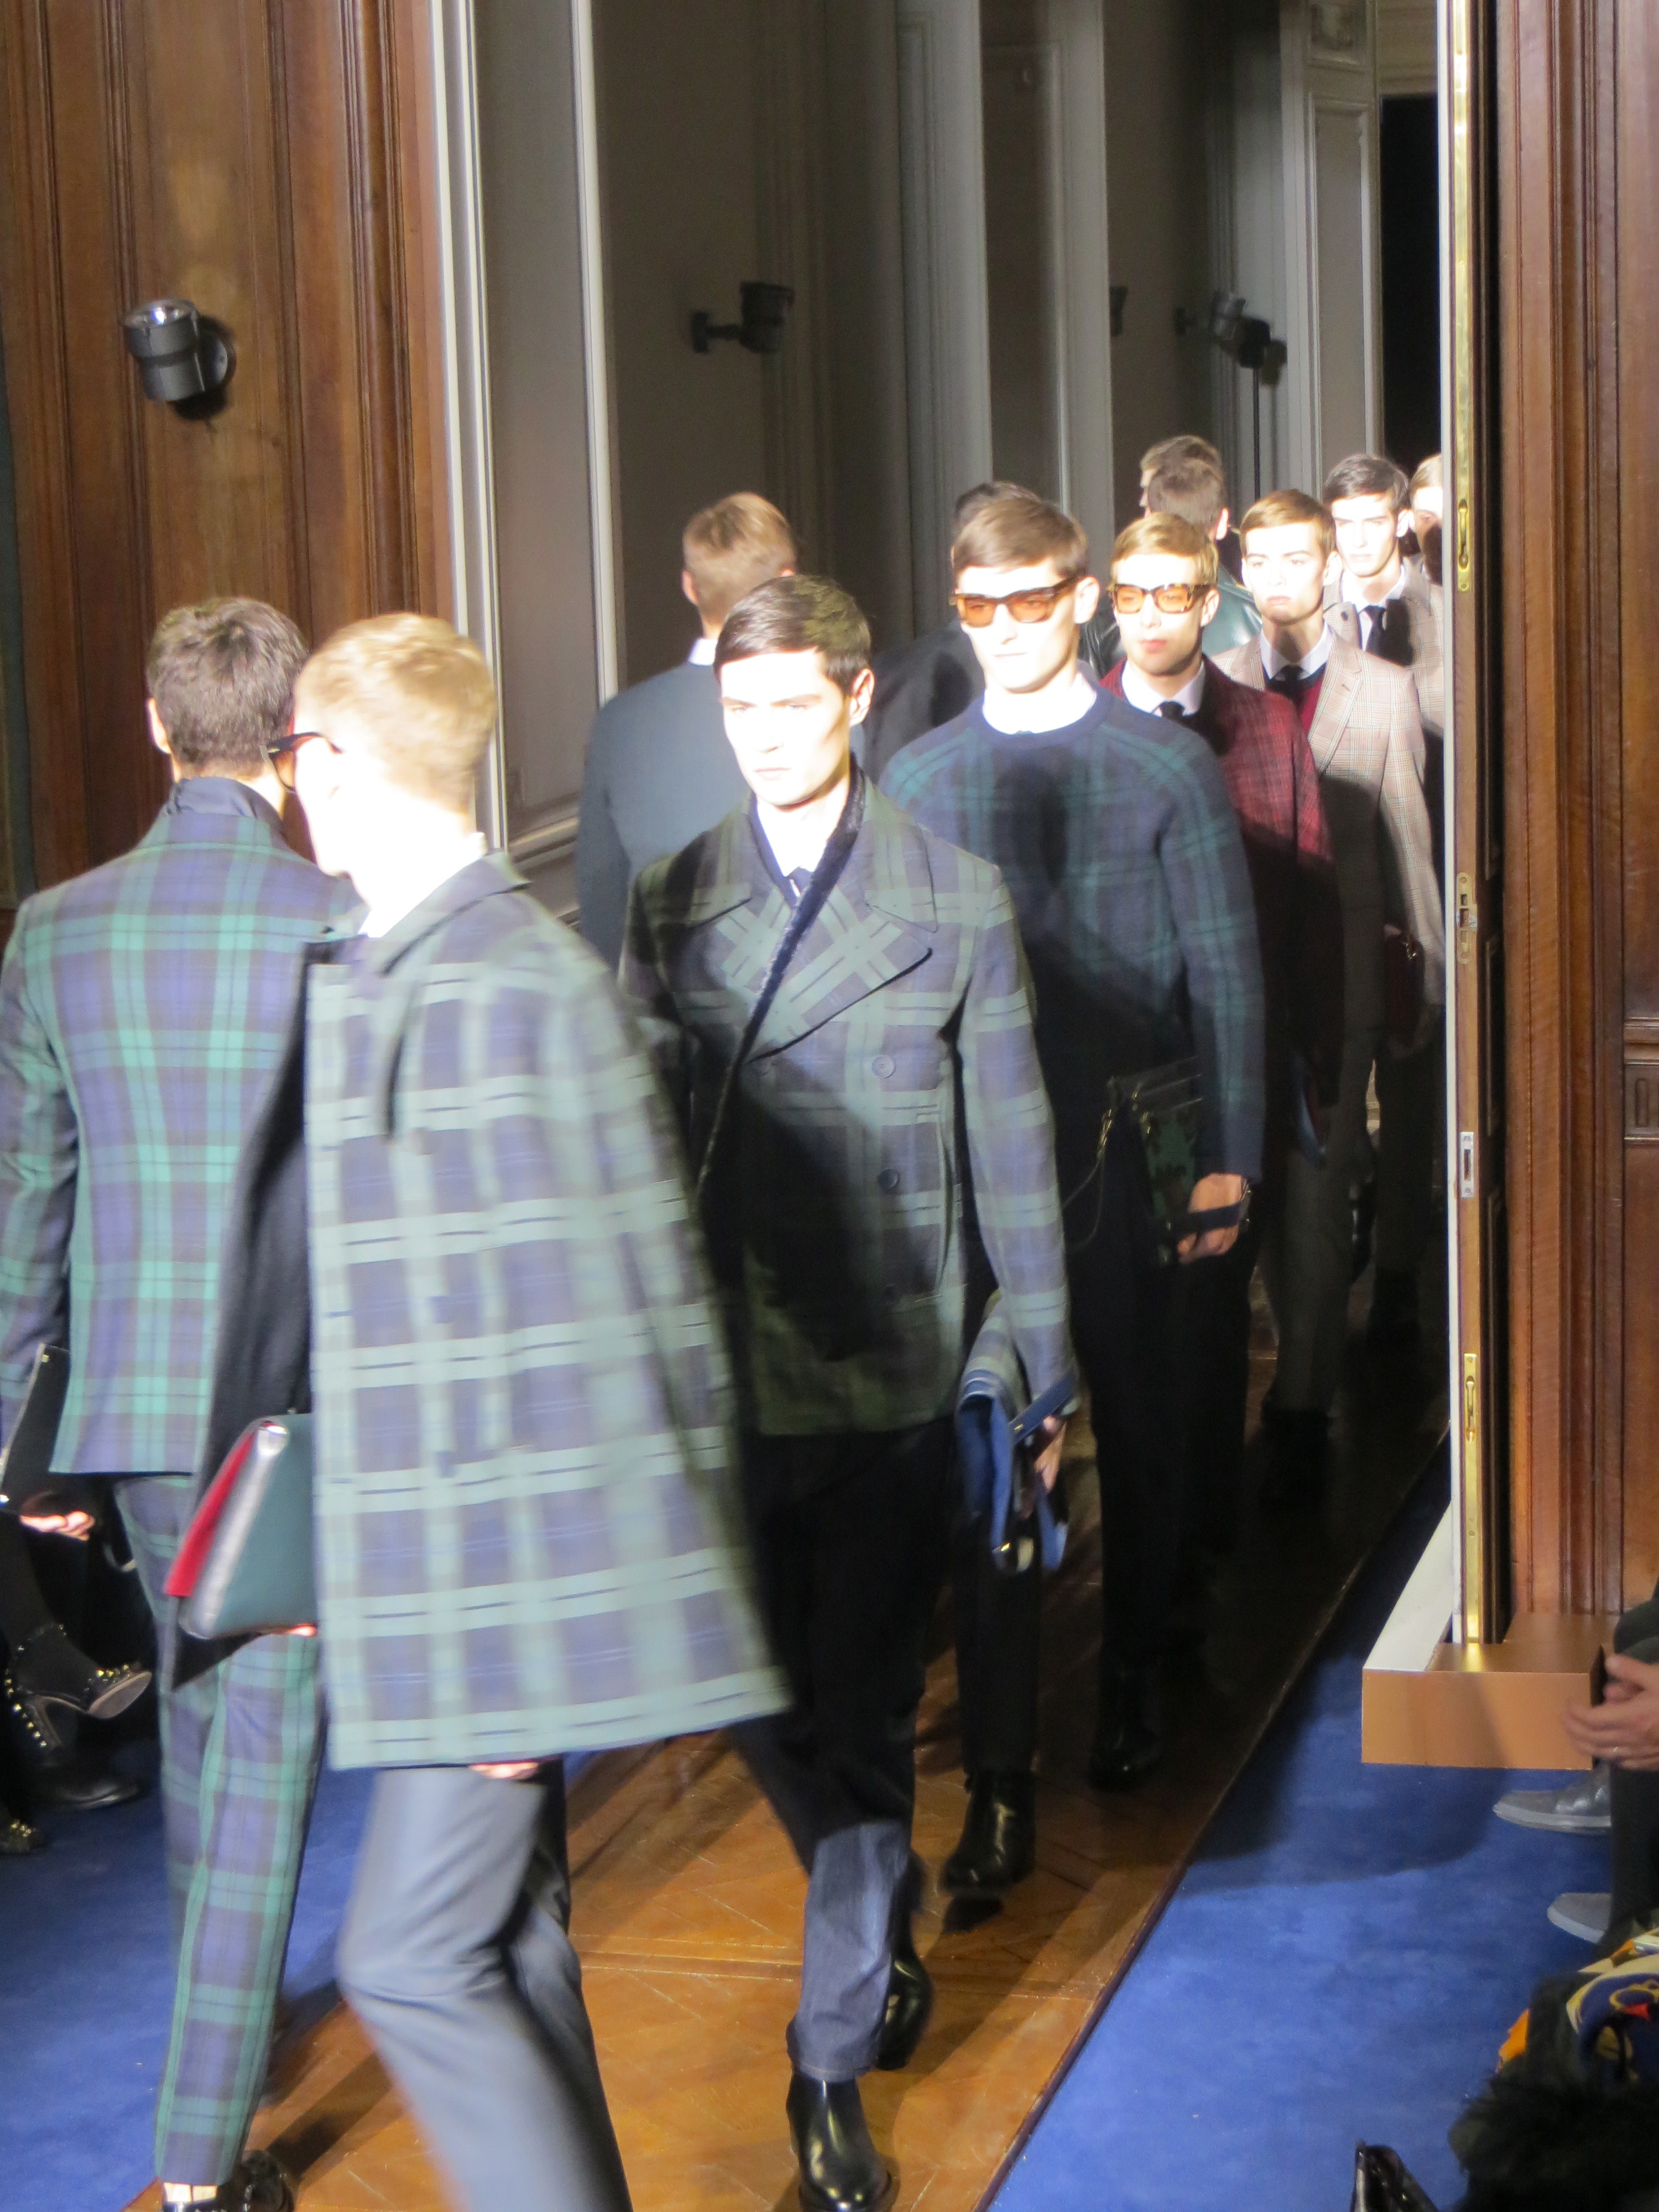 David Beckham at Louis Vuitton Mens Wear SS14 - Agent luxe blog